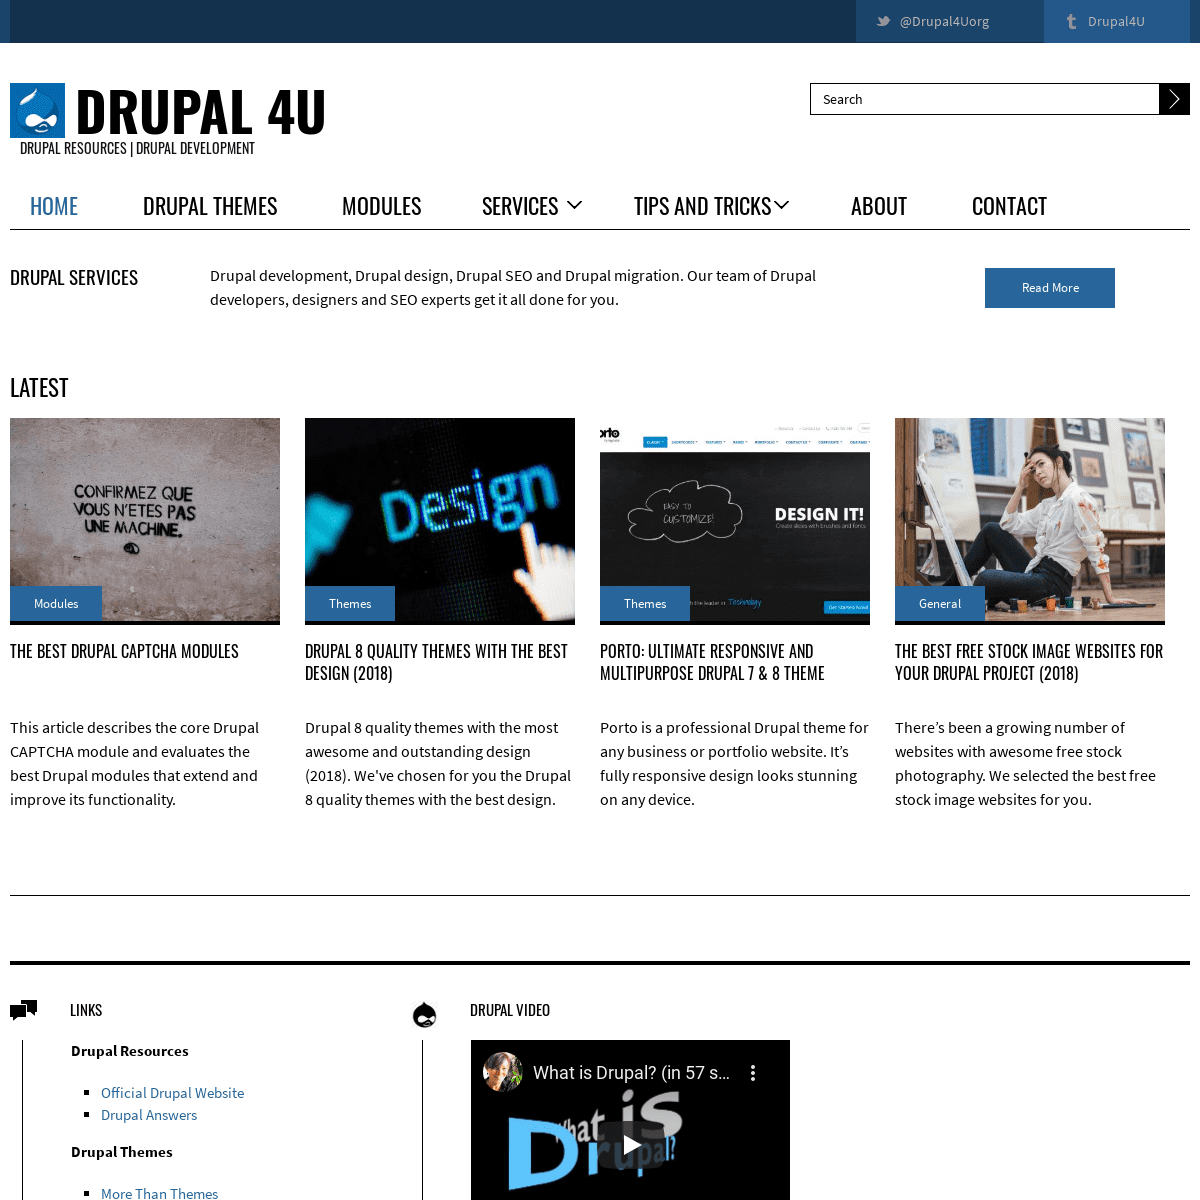 A complete backup of drupal4u.org